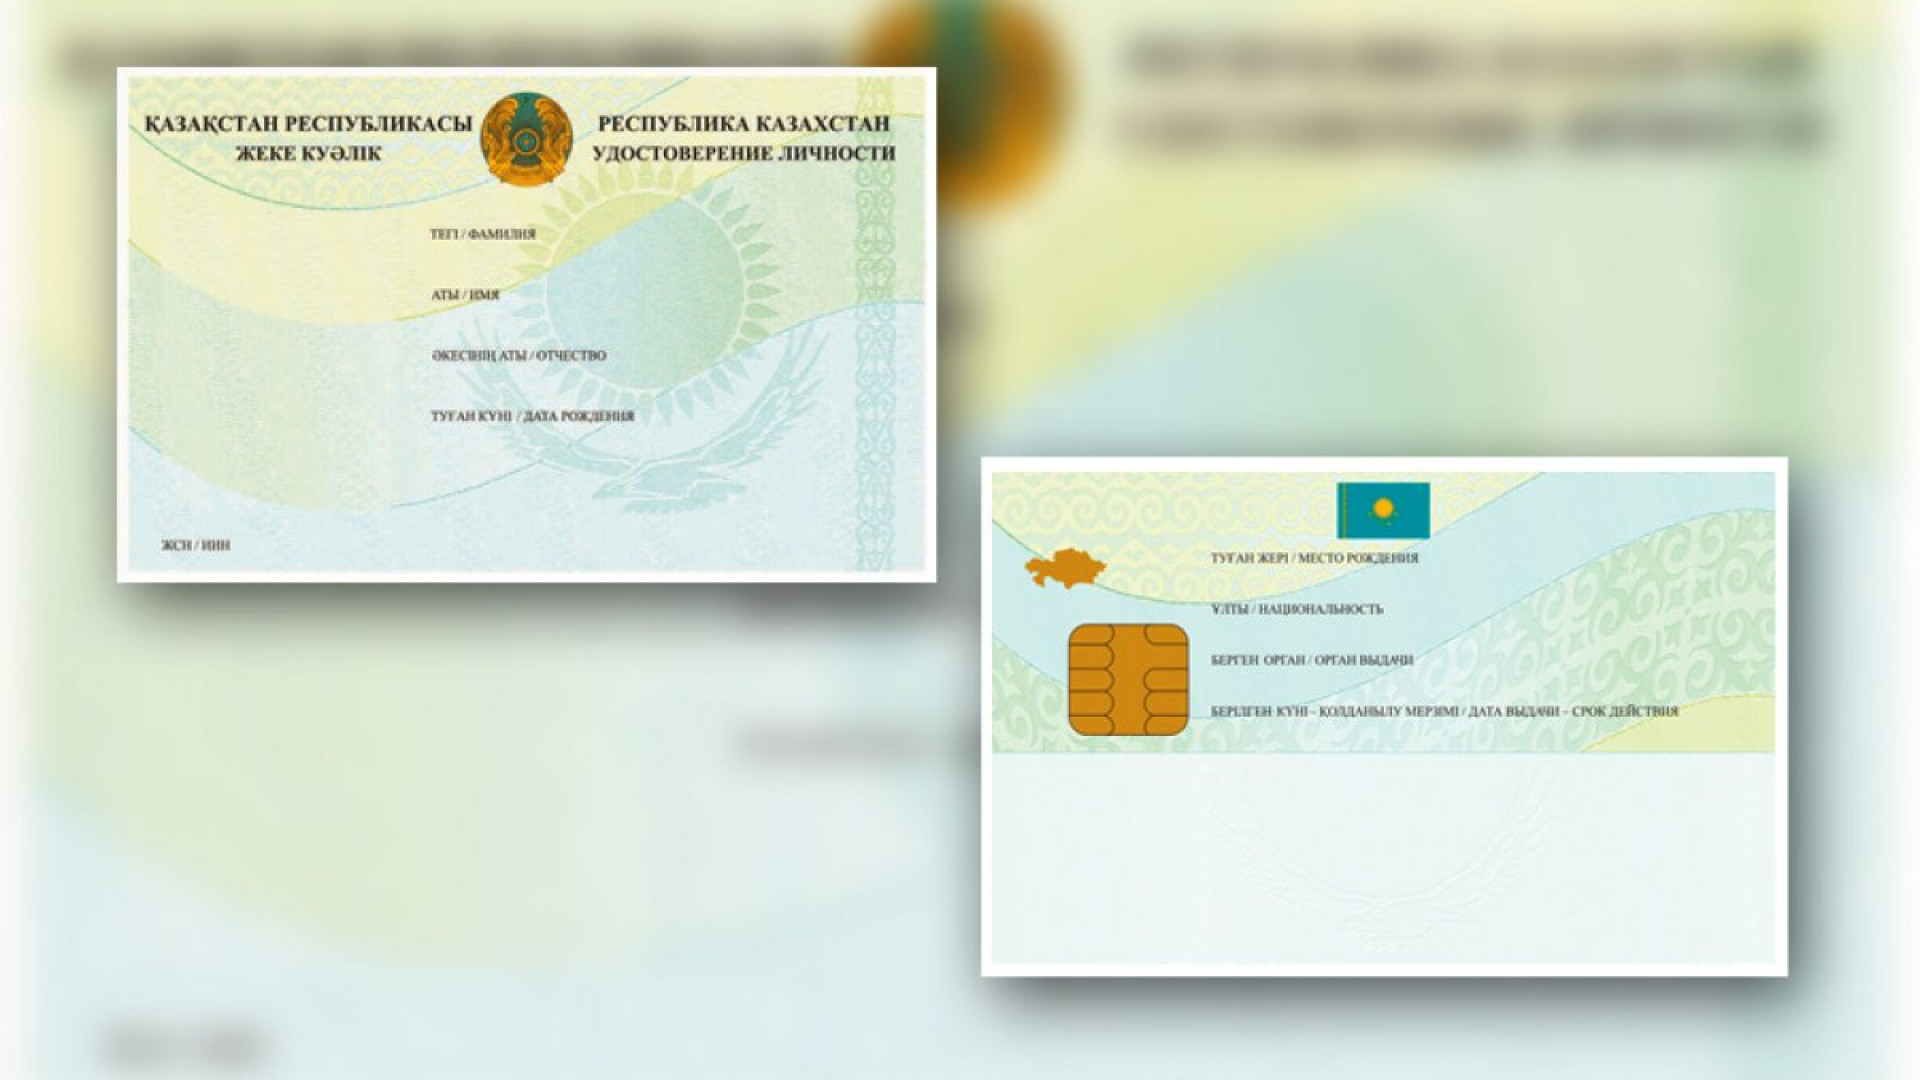 Подтверждающие документы казахстан. Удостоверения личности гражданина Казахстана нового образца.